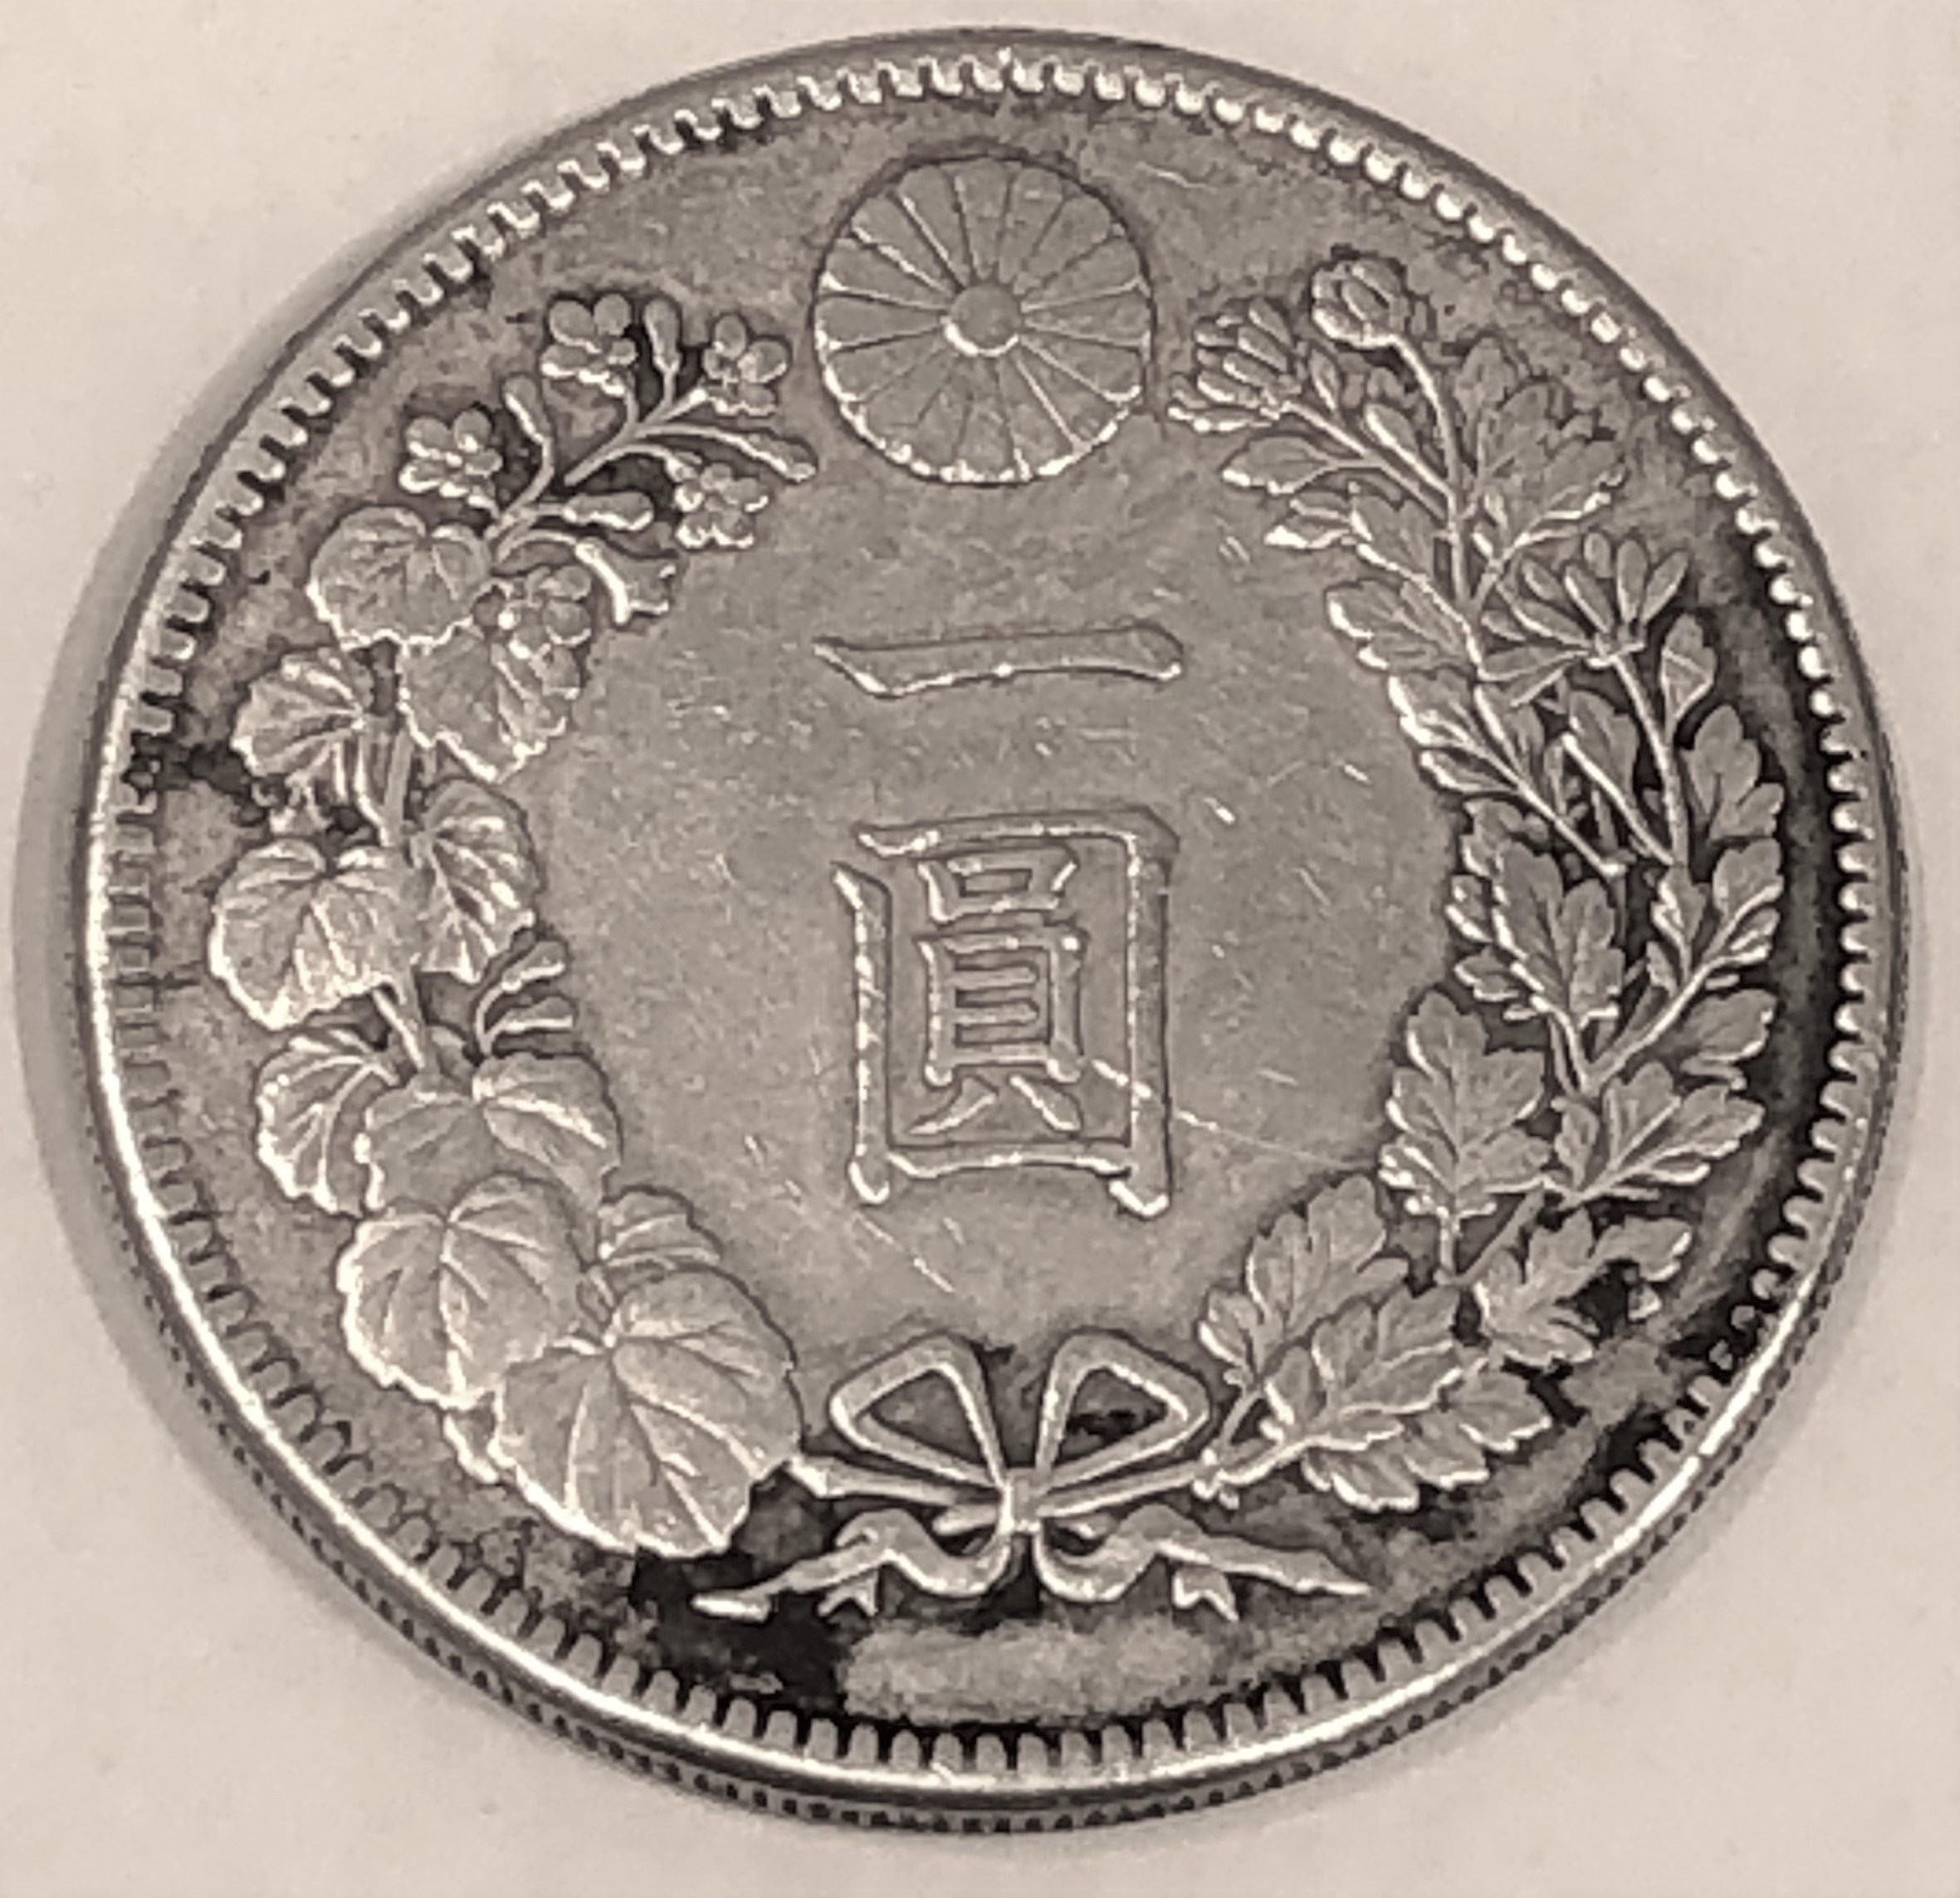 【日本古銭】新1円銀貨(小型)一圓銀貨 明治41年